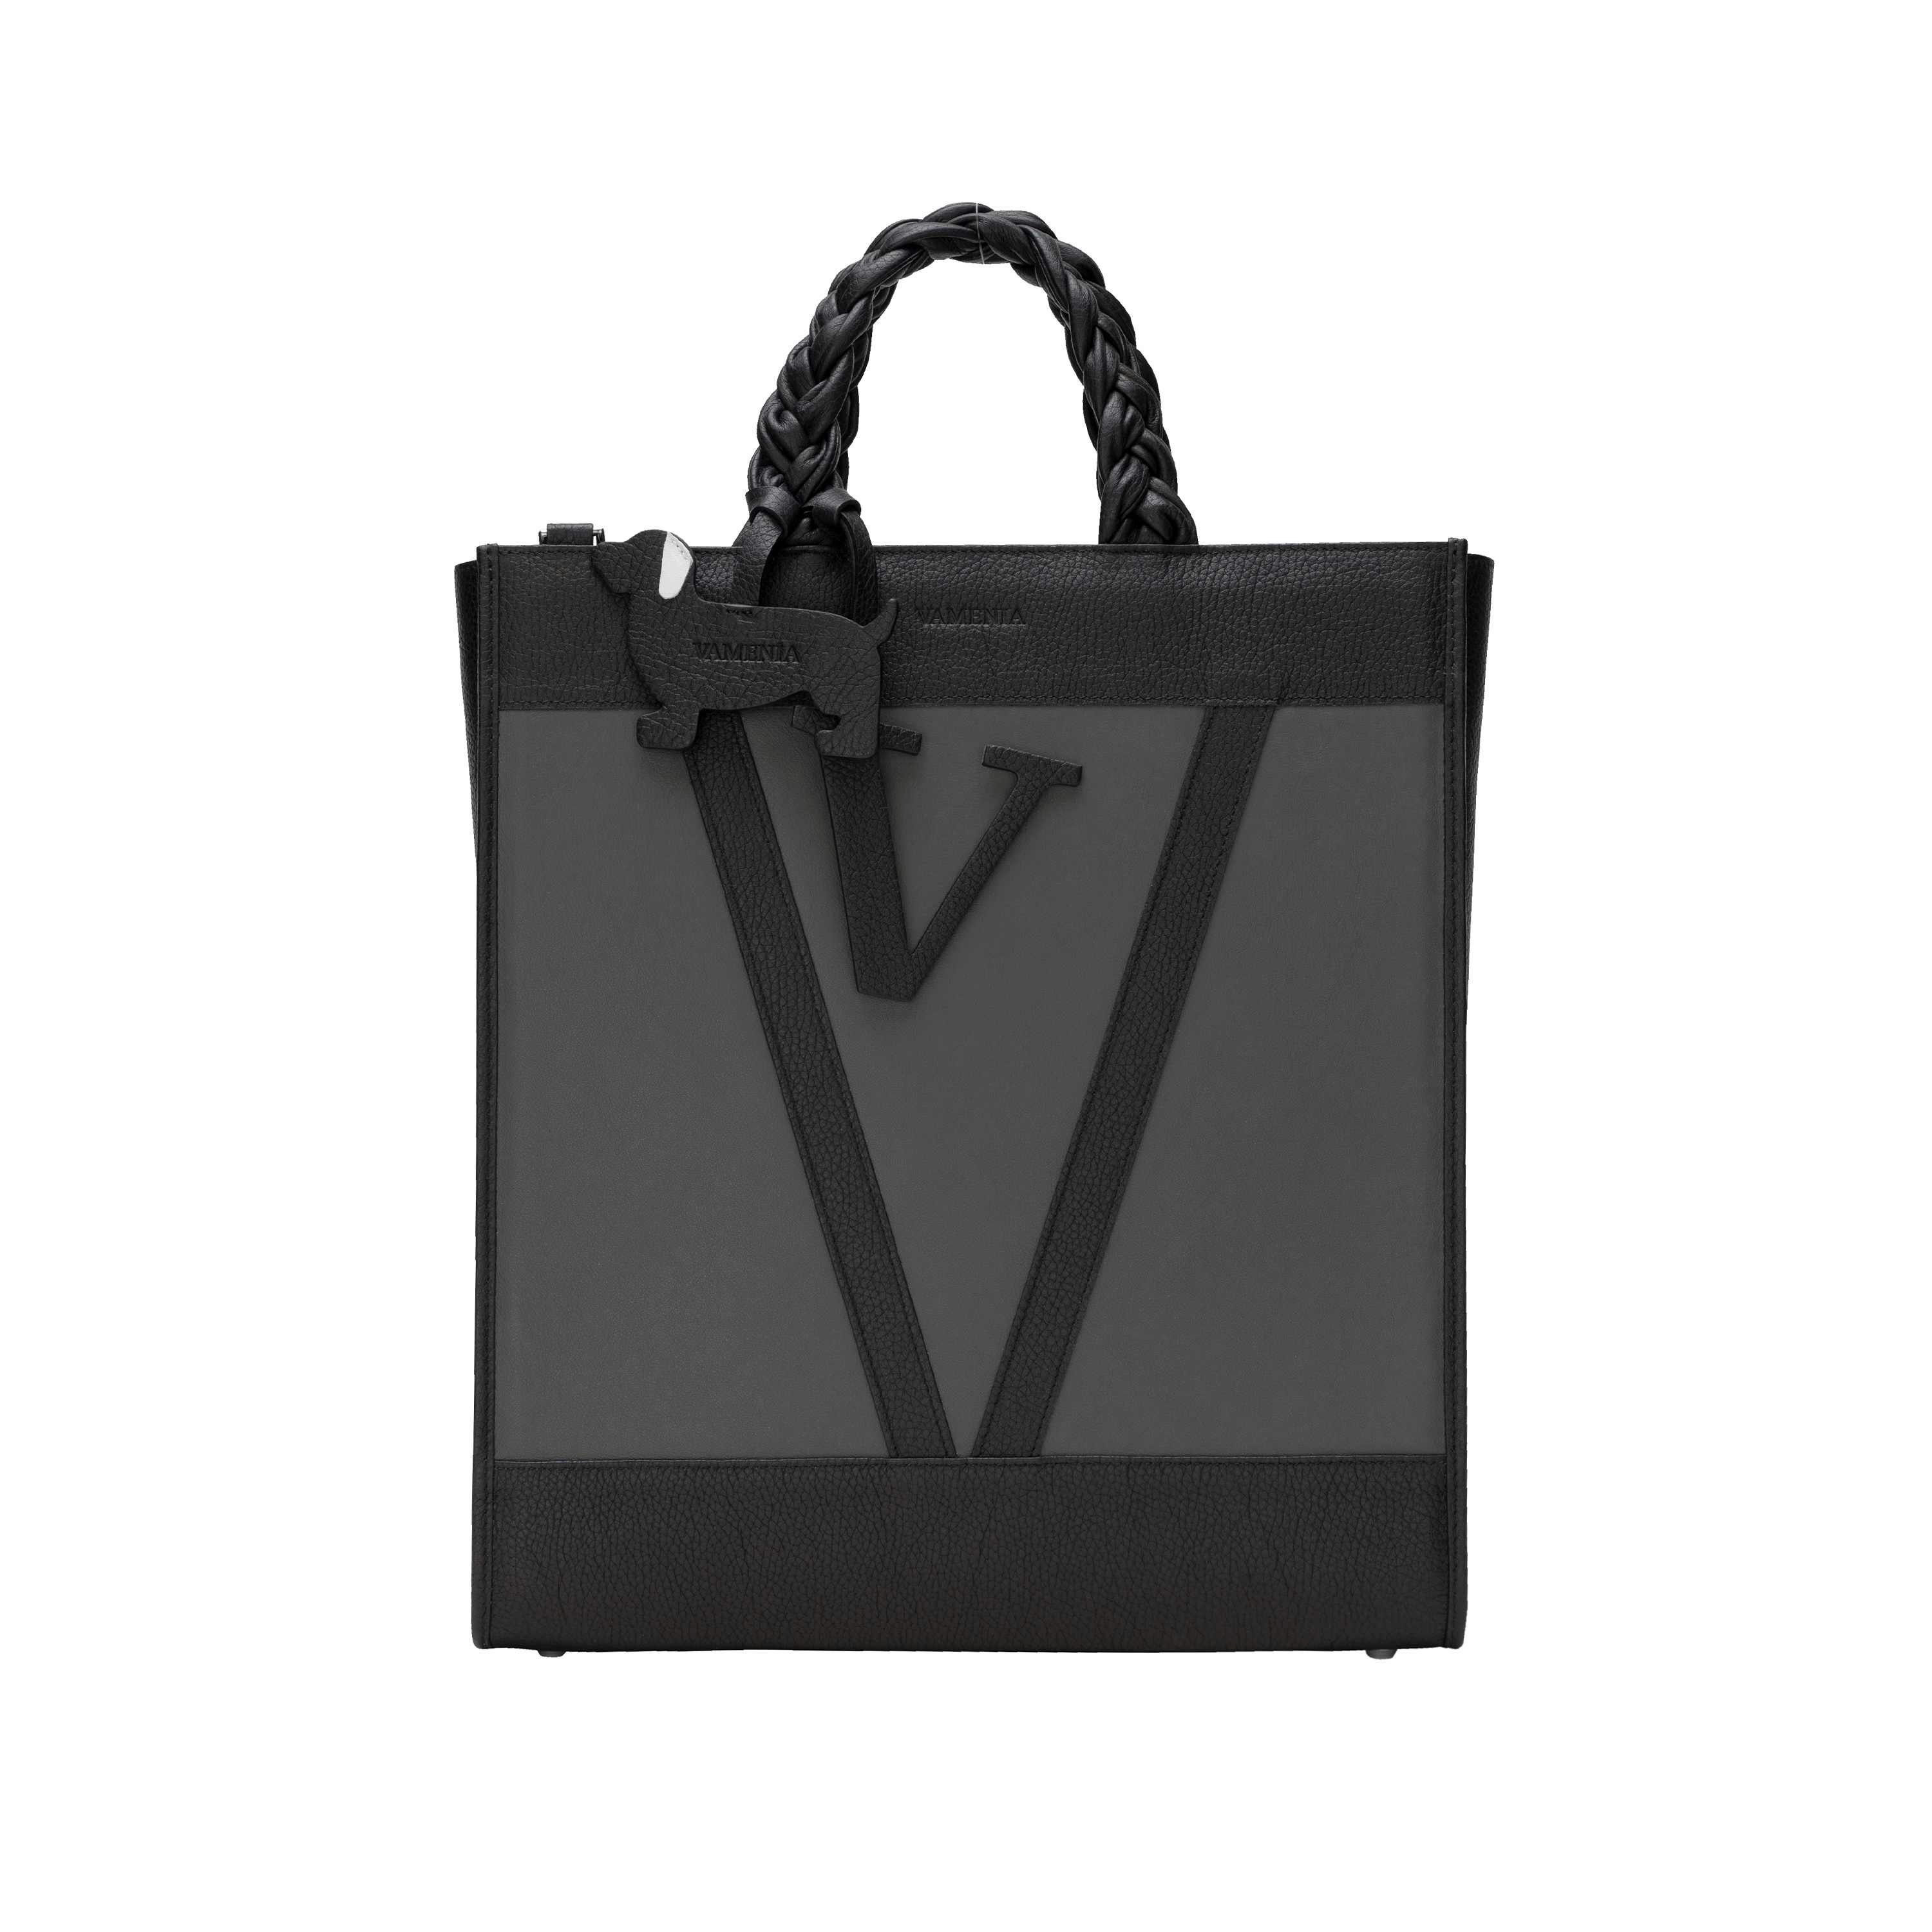 VAMENIA - Handmade in Germany Handtasche Tote Bag Handtasche aus glattem Kalbsleder geflochtenen Henkeln -SOL-